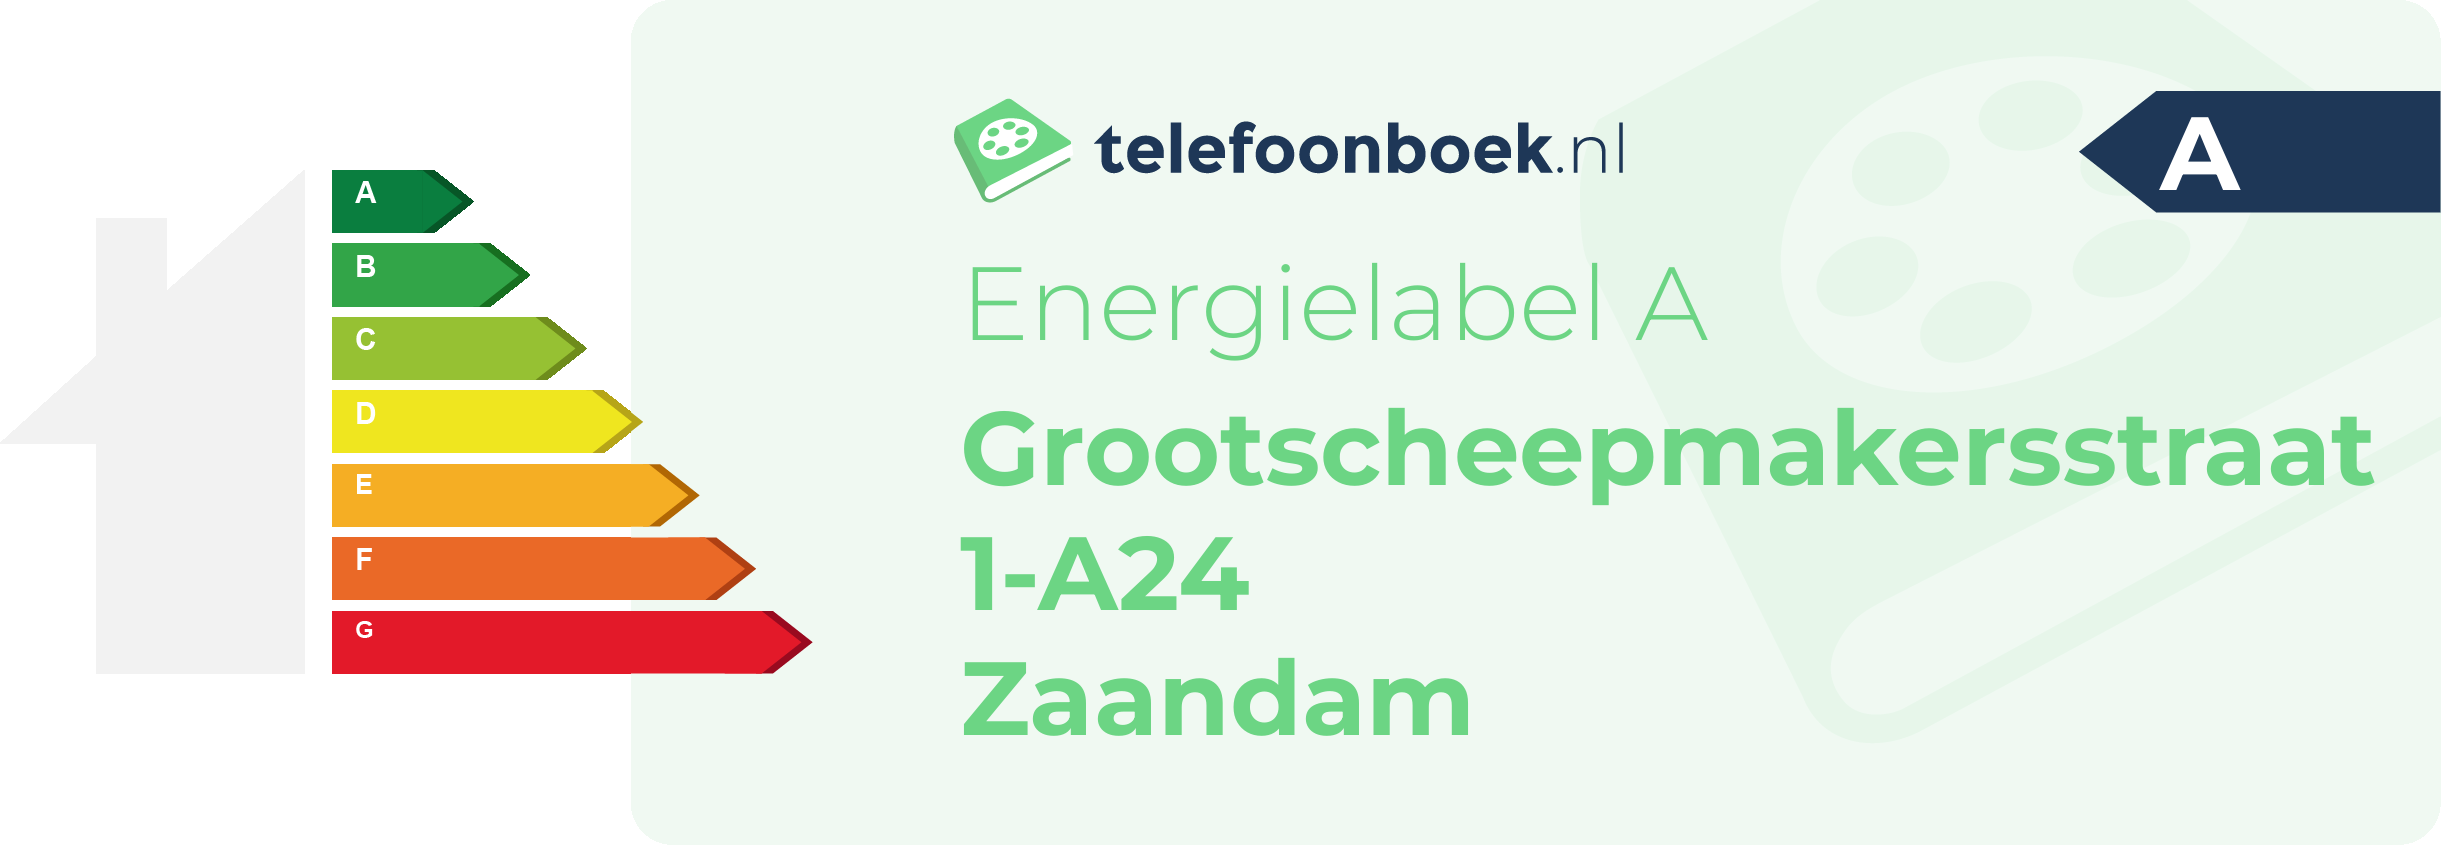 Energielabel Grootscheepmakersstraat 1-A24 Zaandam